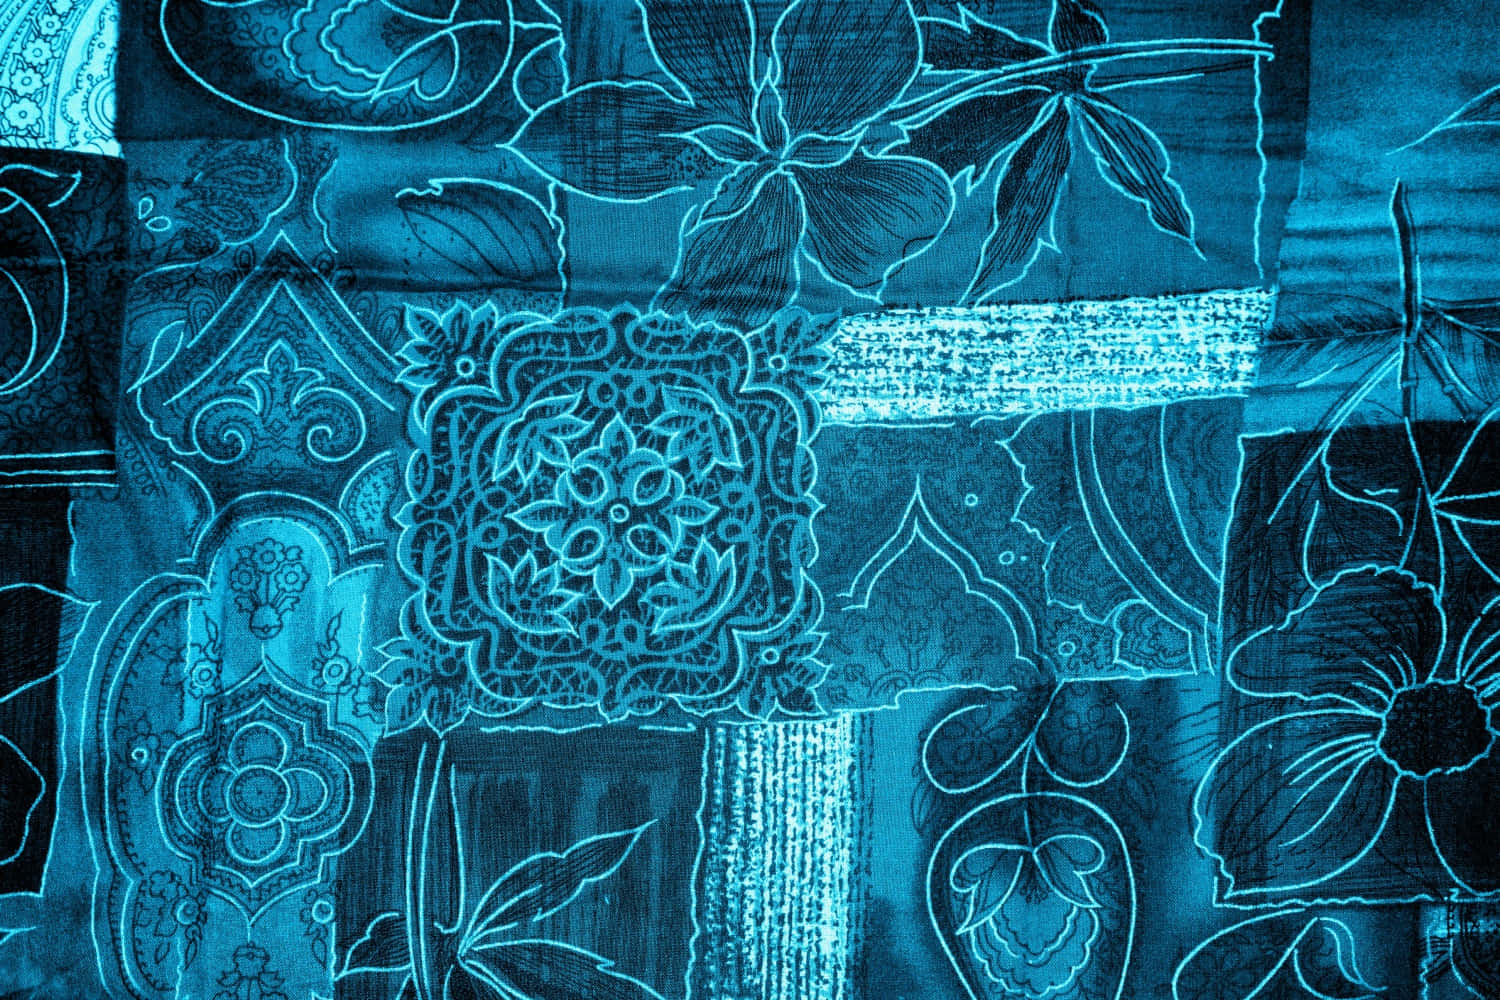 Imagende Textura De Tela Con Patrón Floral En Tono Azul Neón.